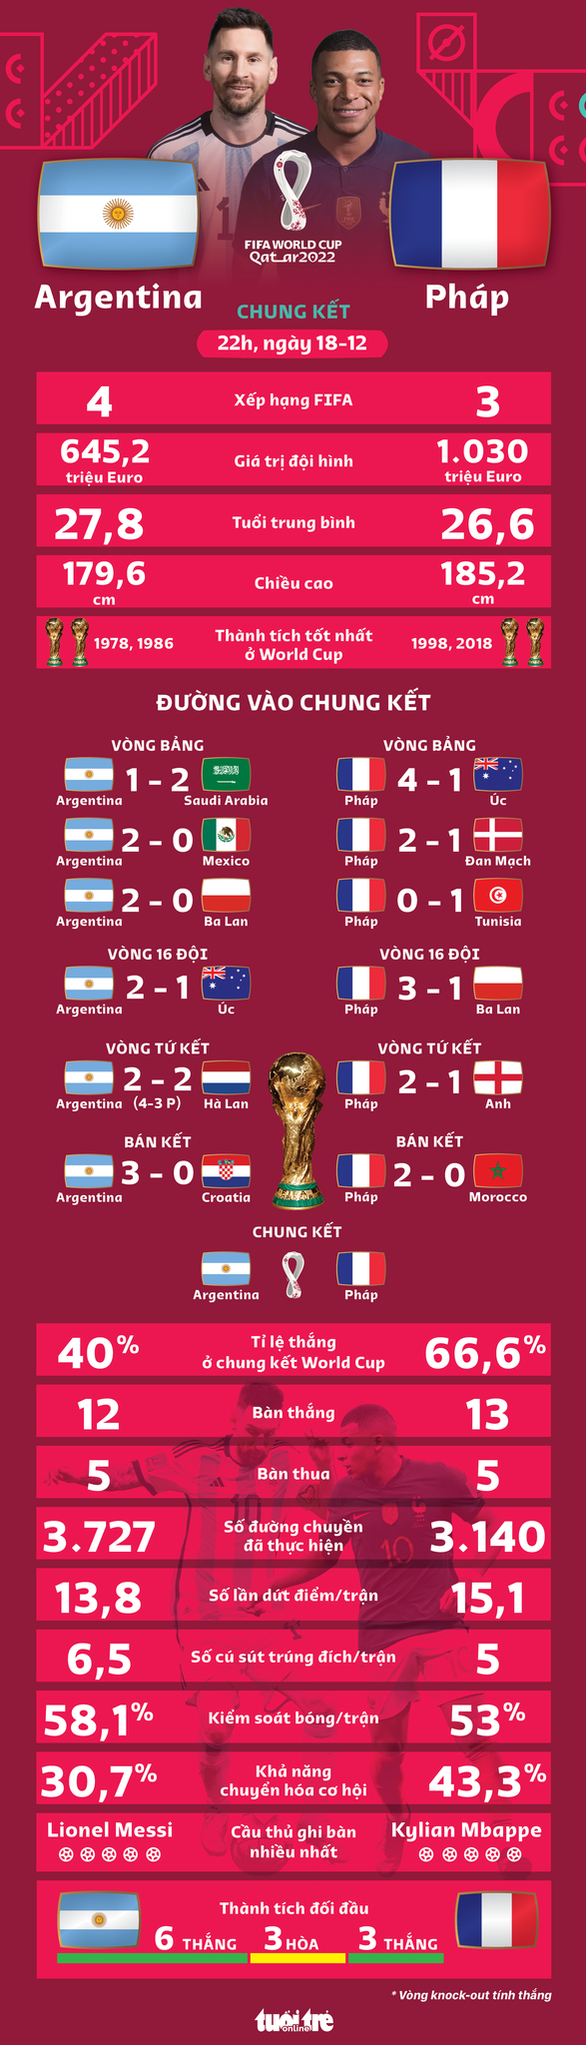 Tương quan sức mạnh giữa Argentina và Pháp ở chung kết World Cup 2022 - Ảnh 1.